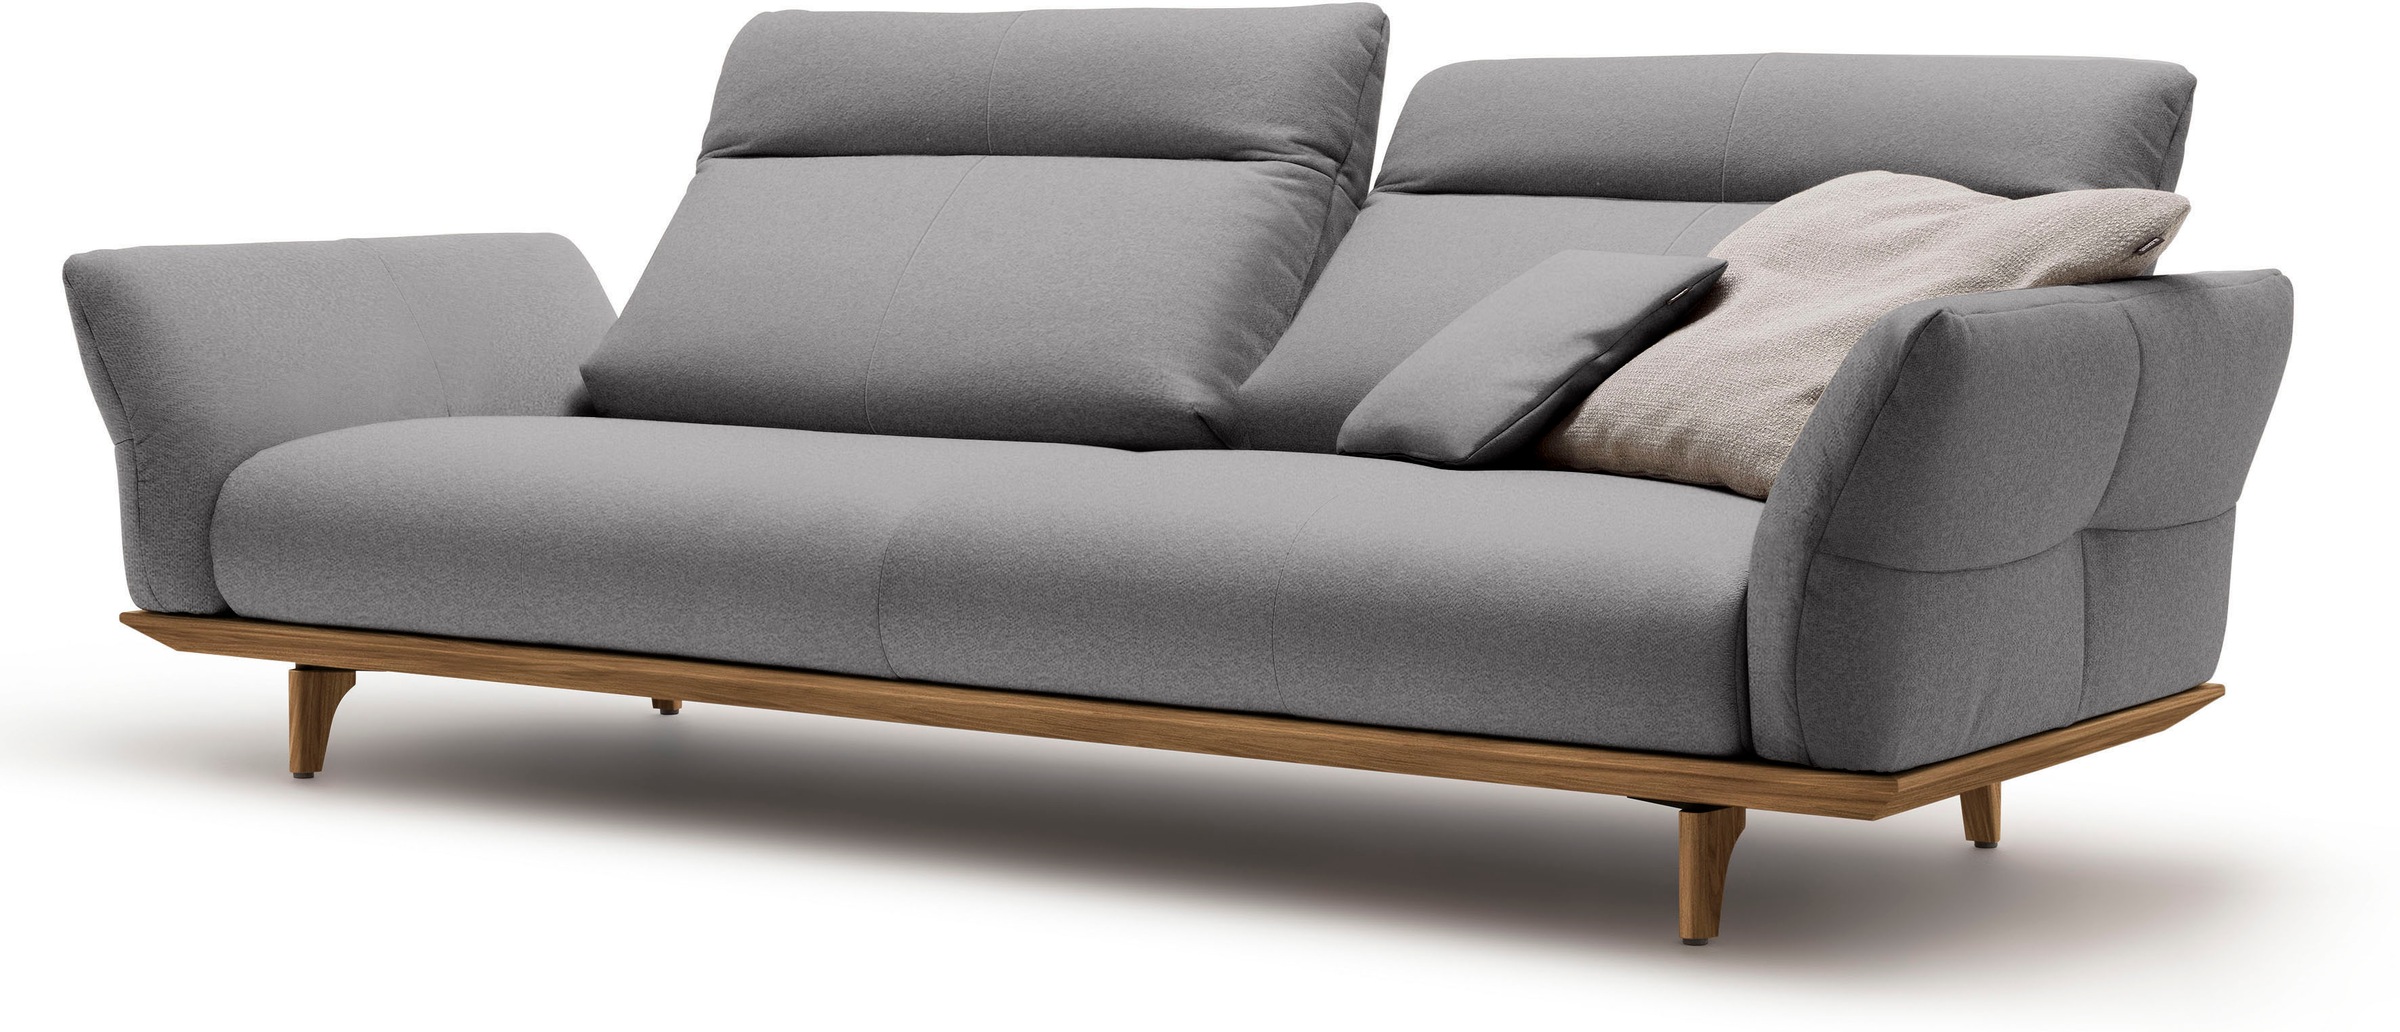 hülsta sofa 3,5-Sitzer »hs.460«, Sockel und Füße in Nussbaum, Breite 228 cm